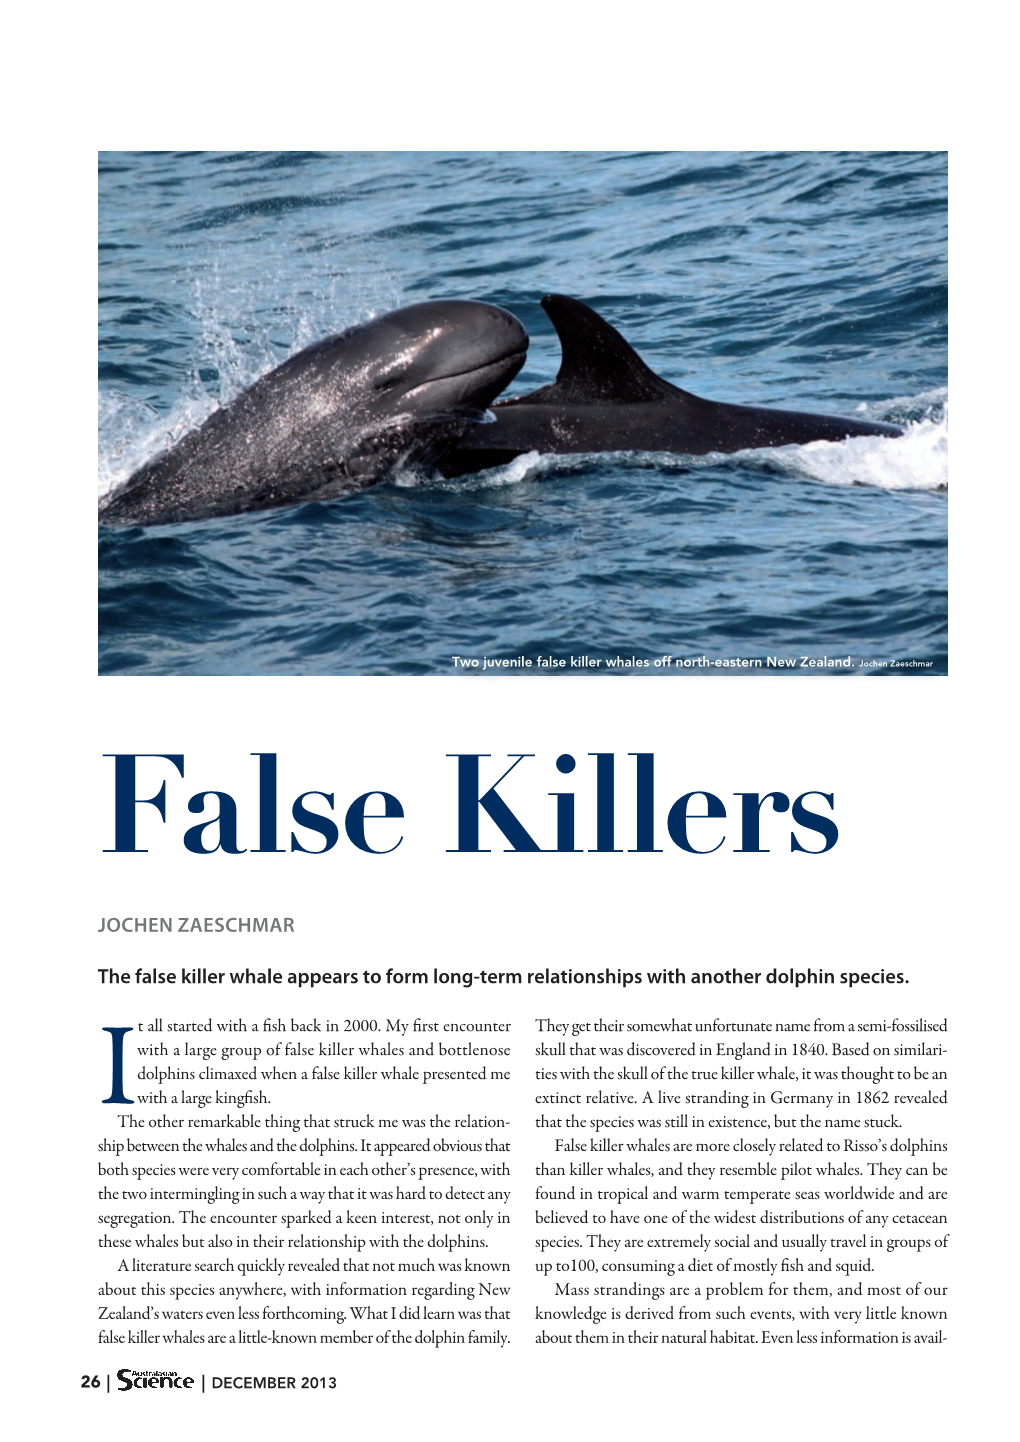 JOCHEN ZAESCHMAR the False Killer Whale Appears to Form Long